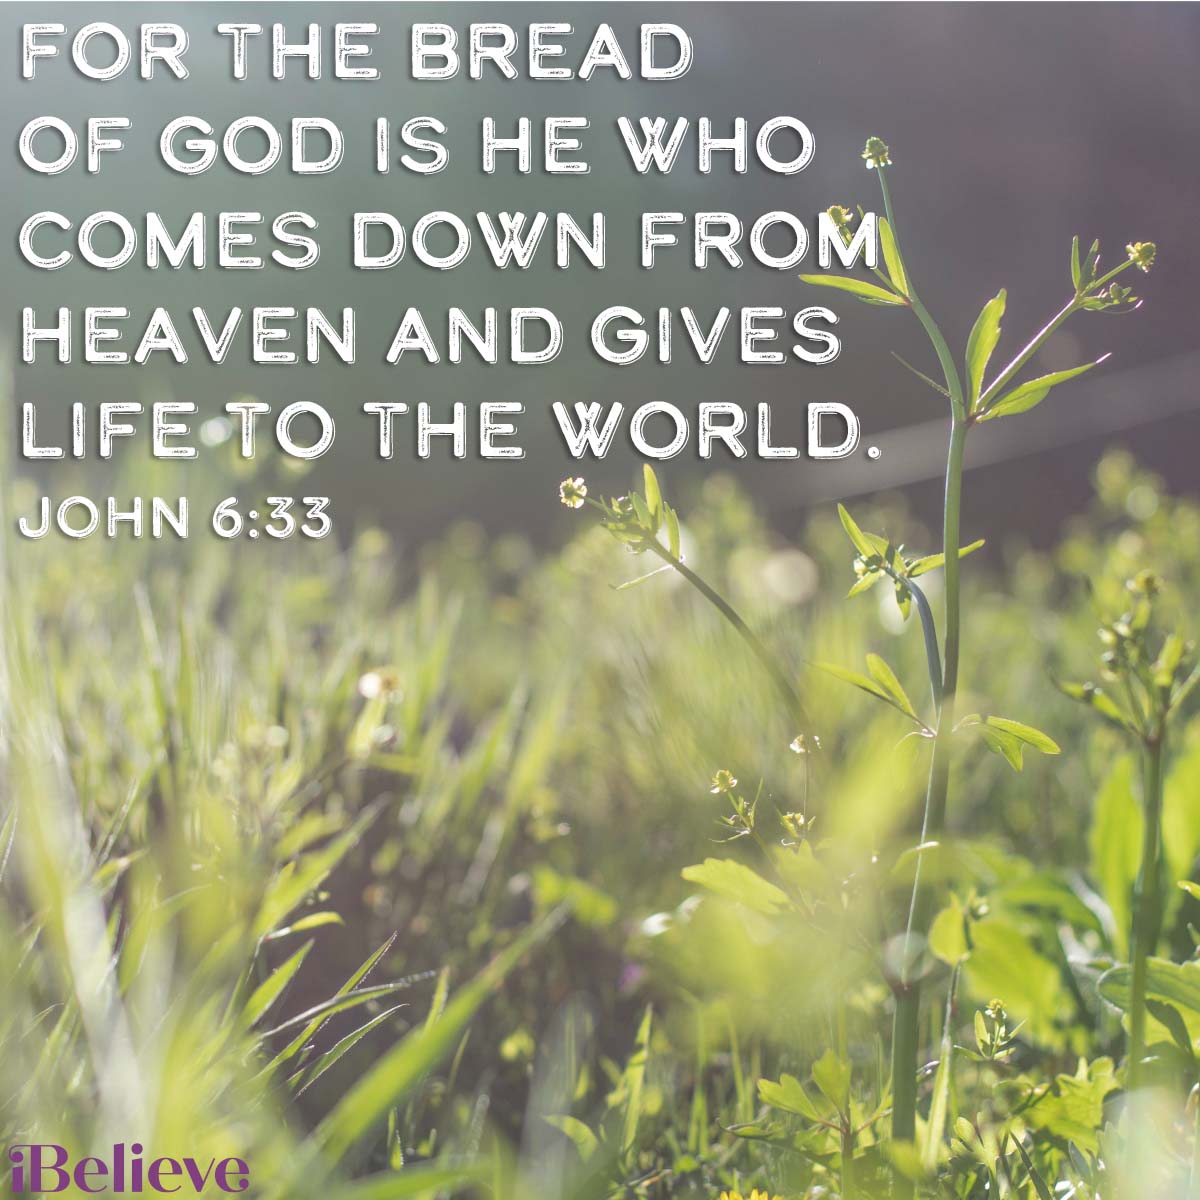 John 6:33